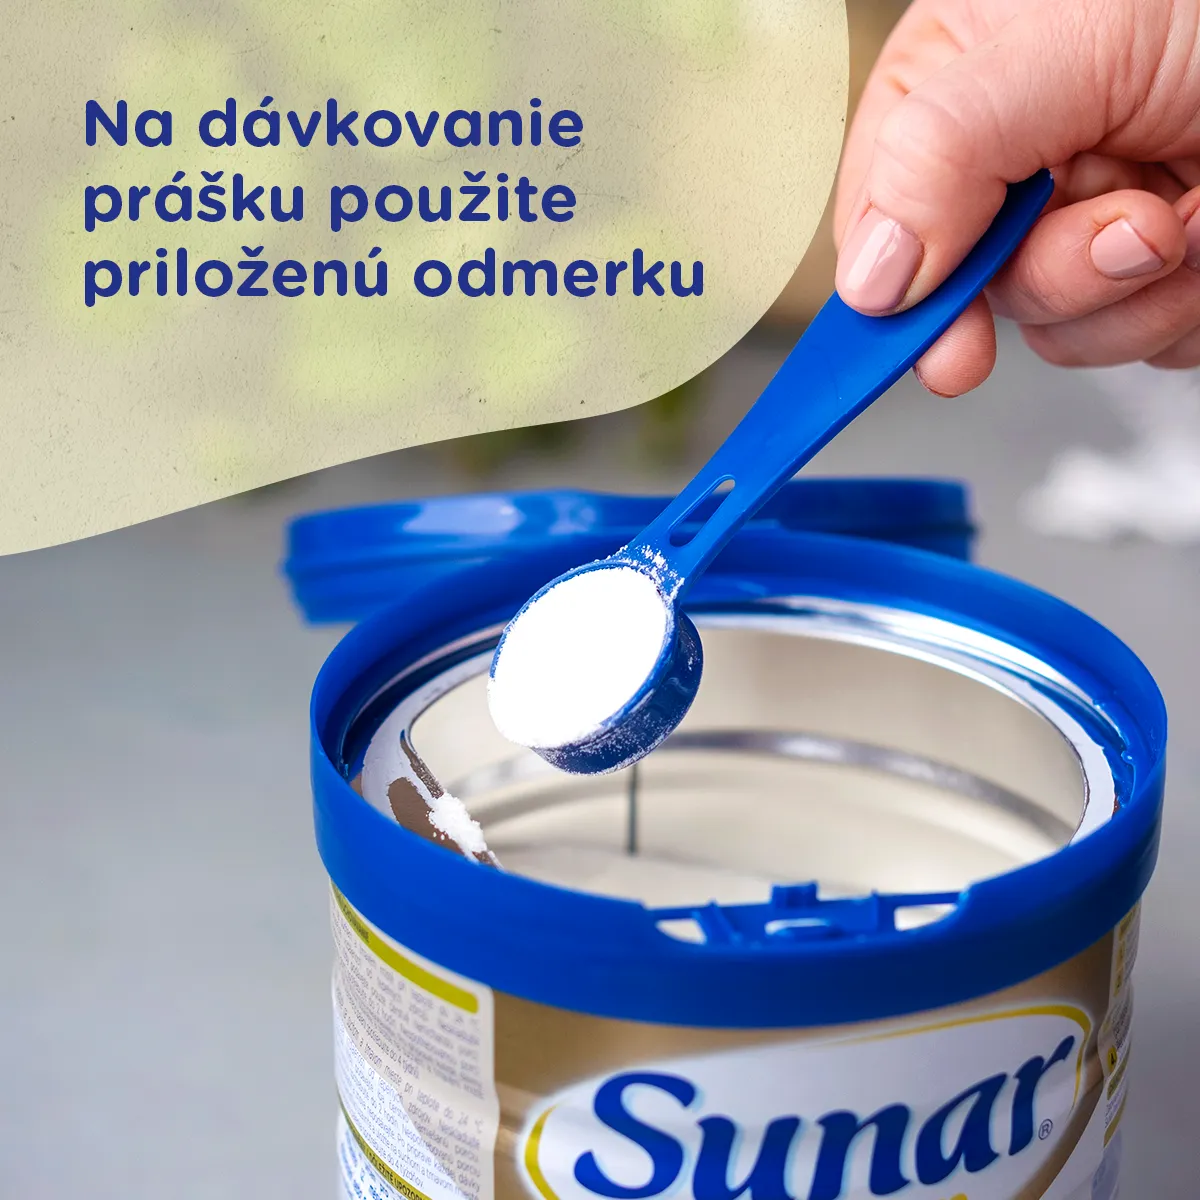 Sunar Premium 3 1×700 g, dojčenské mlieko, od 12. mesiaca